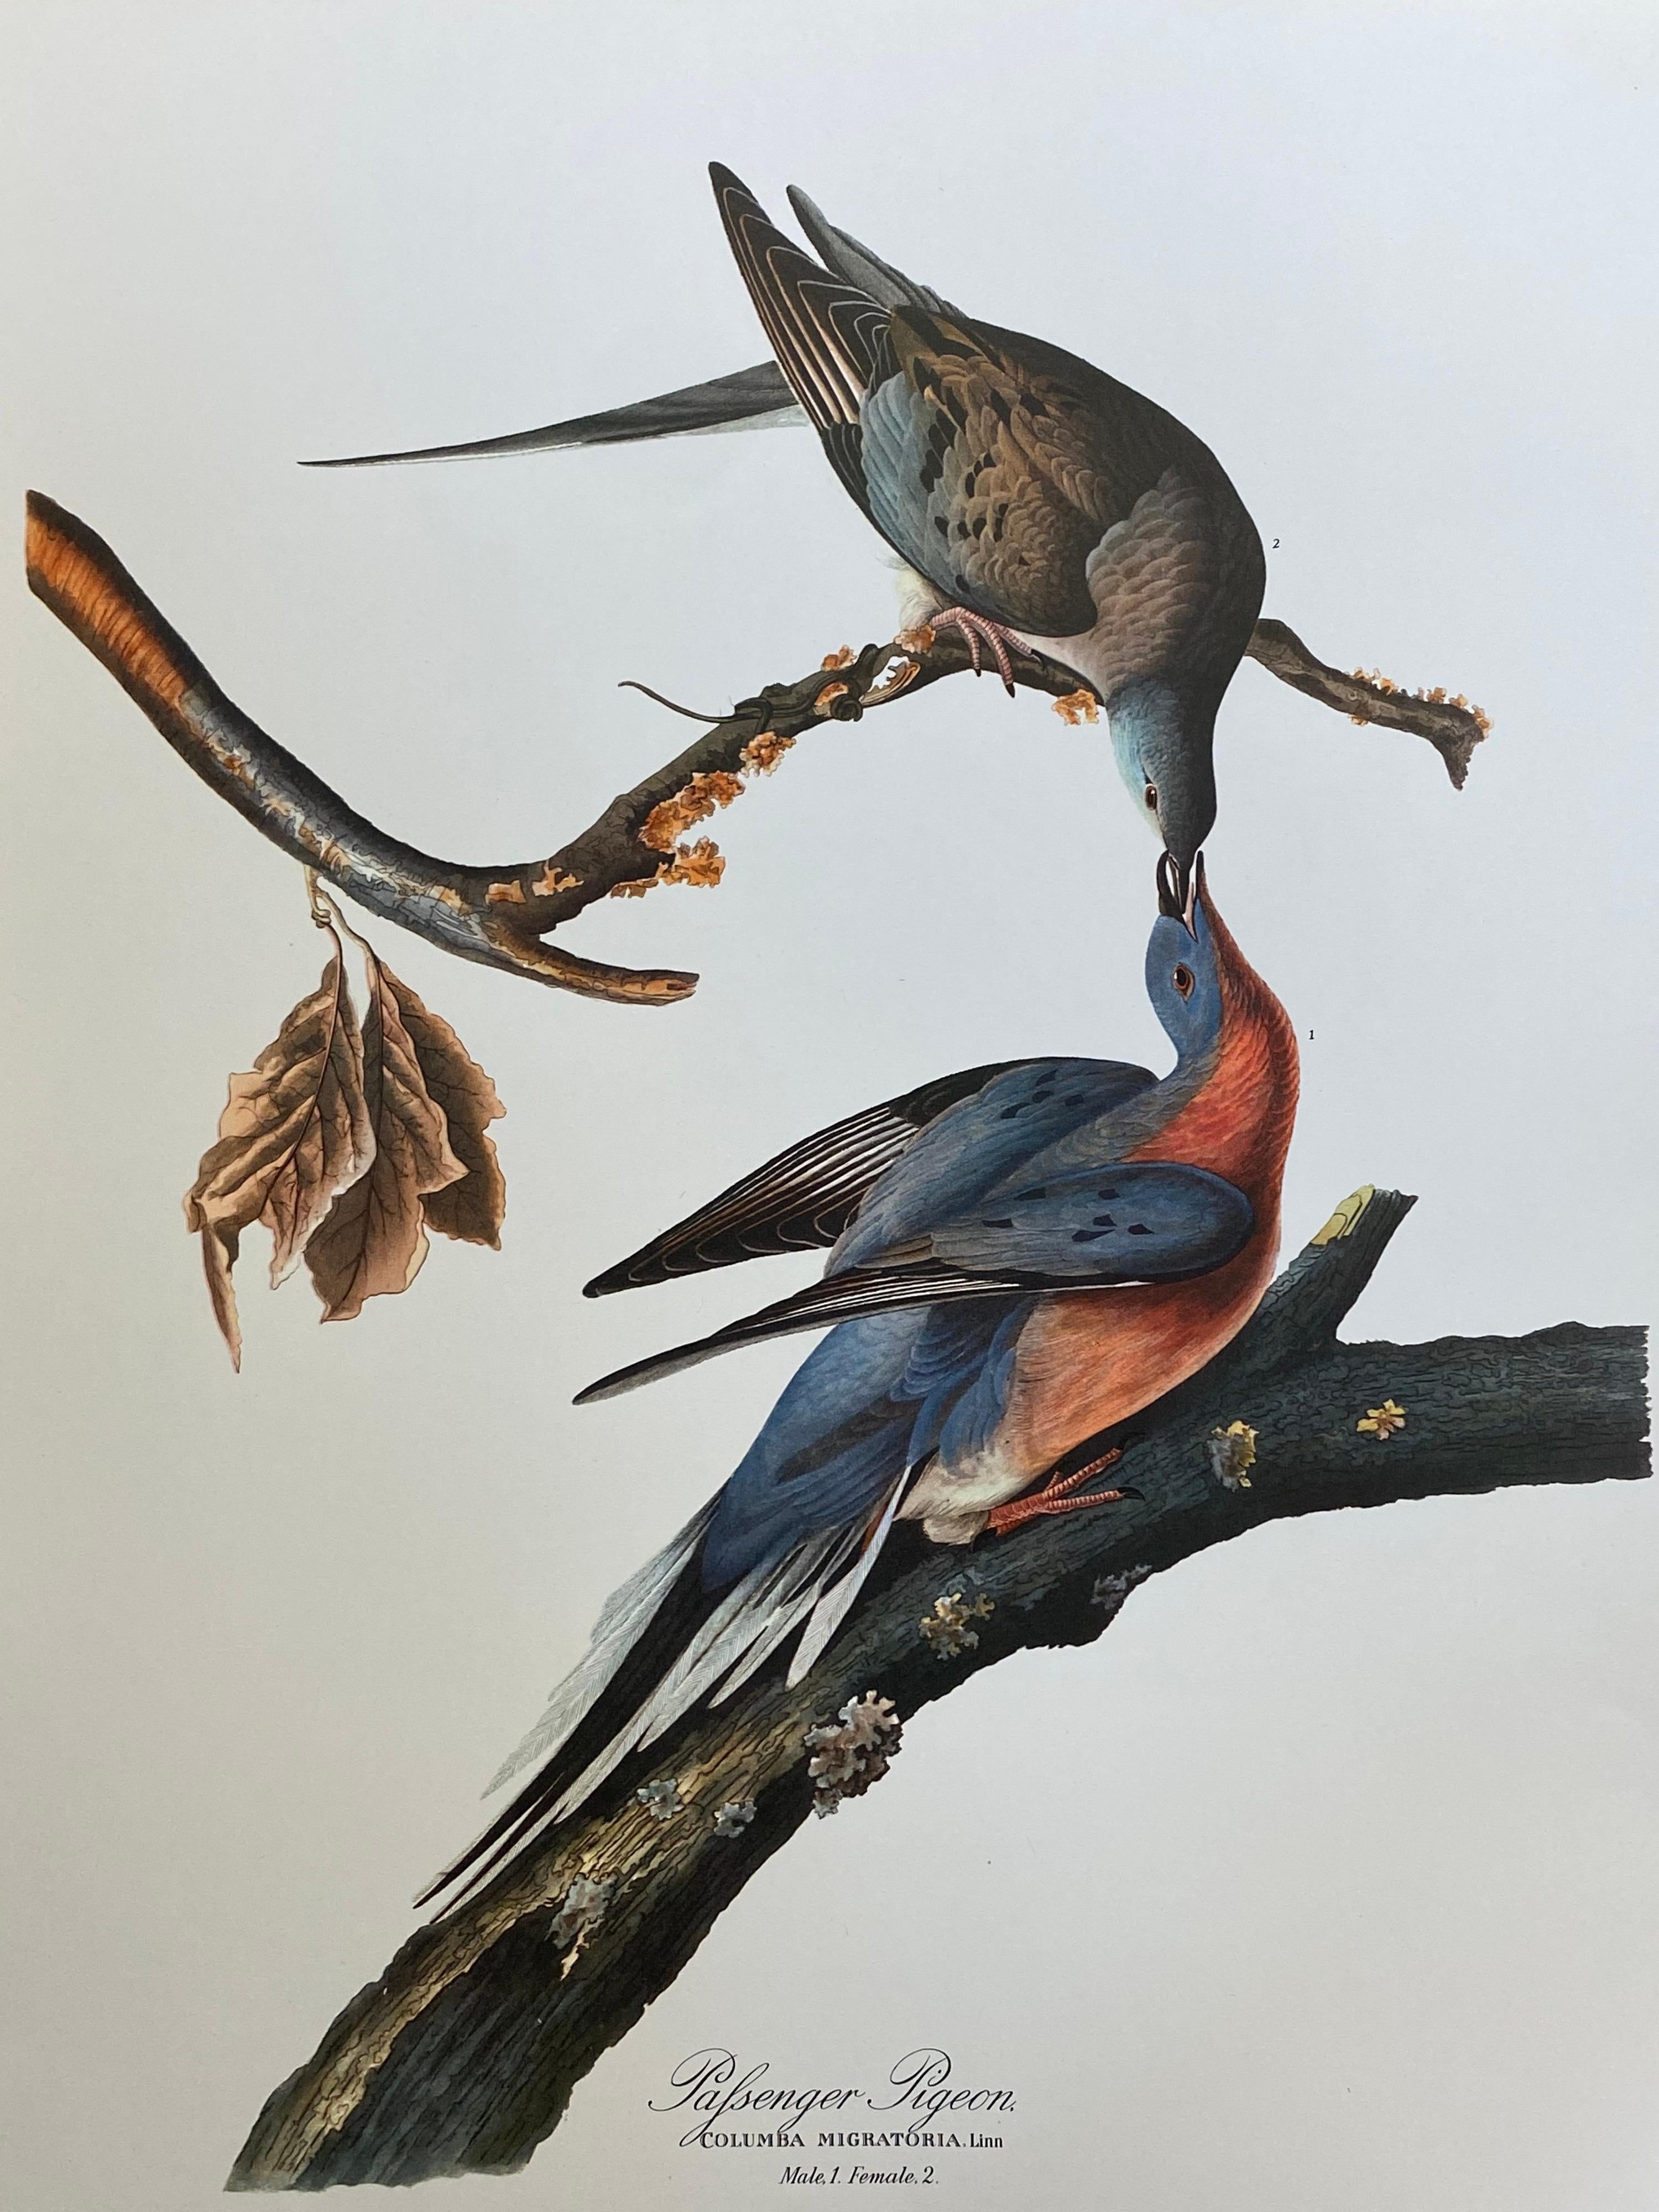 Animal Print After John James Audubon - Grande impression classique en couleur d'oiseau d'après John James Audubon - Passenger Pigeon